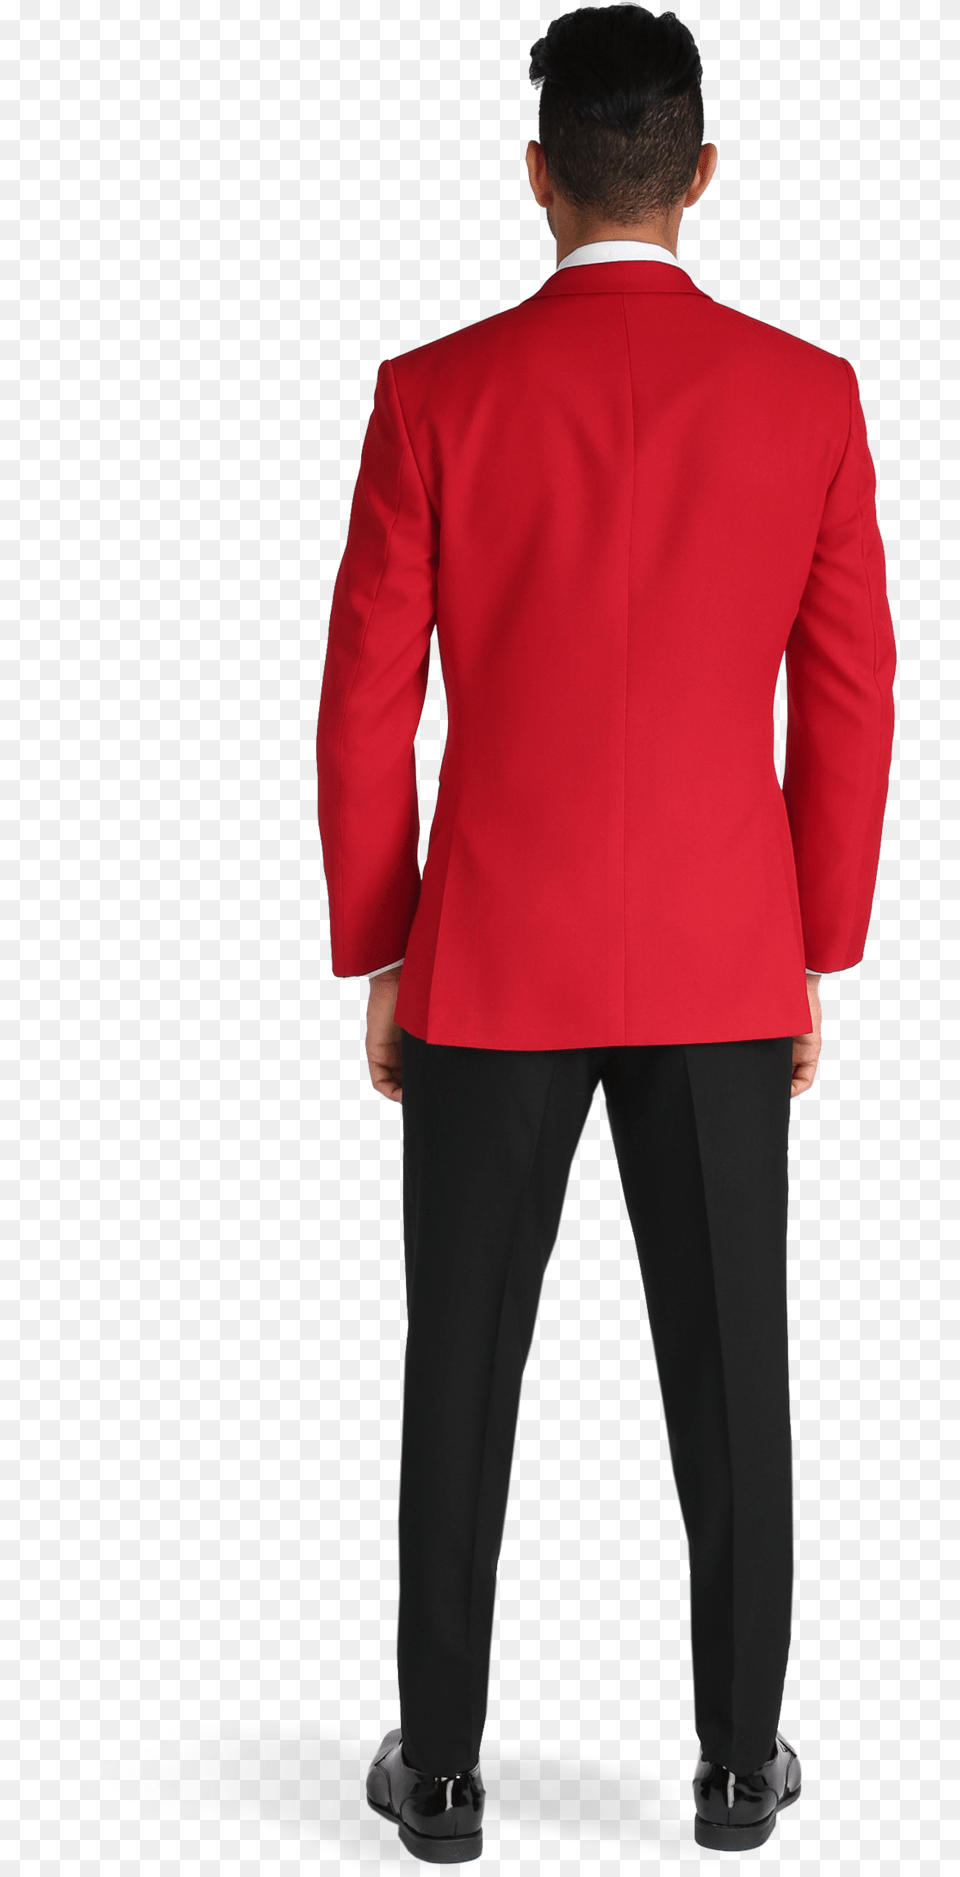 Red Peak Lapel Tuxedo Suit, Long Sleeve, Jacket, Formal Wear, Coat Png